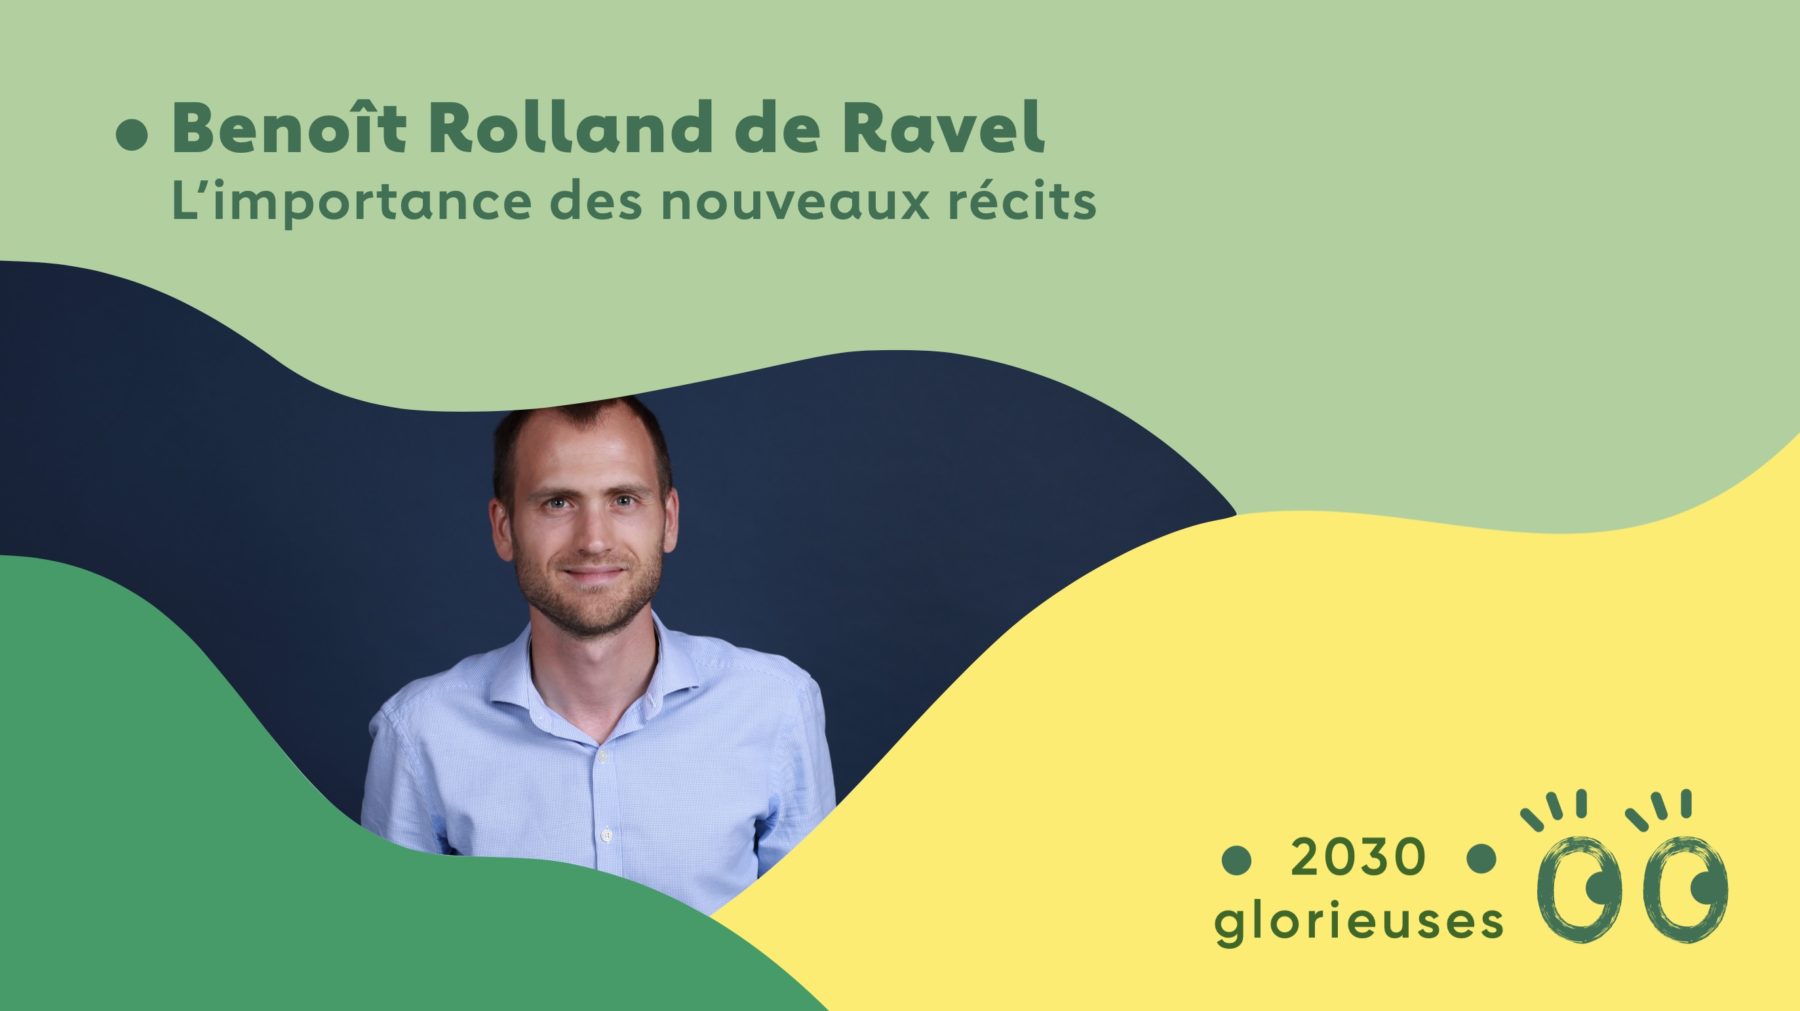 2030 Glorieuses - épisode bonus avec Benoît Rolland de Ravel : "Une fresque c'est avant tout une expérience humaine.."